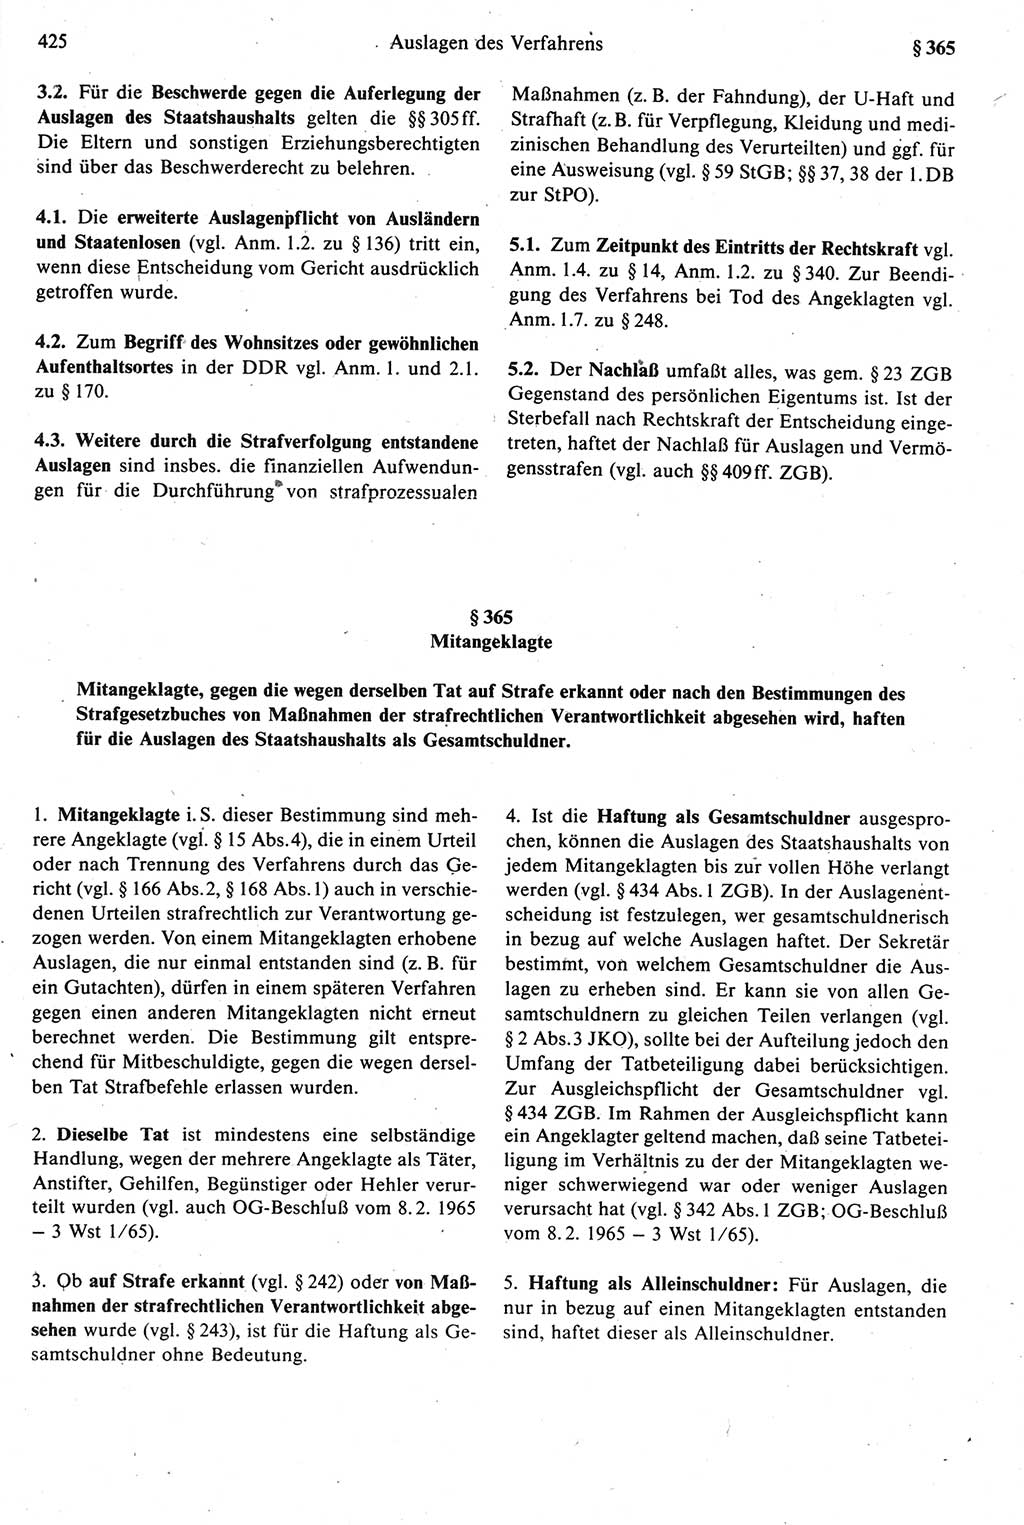 Strafprozeßrecht der DDR [Deutsche Demokratische Republik], Kommentar zur Strafprozeßordnung (StPO) 1987, Seite 425 (Strafprozeßr. DDR Komm. StPO 1987, S. 425)